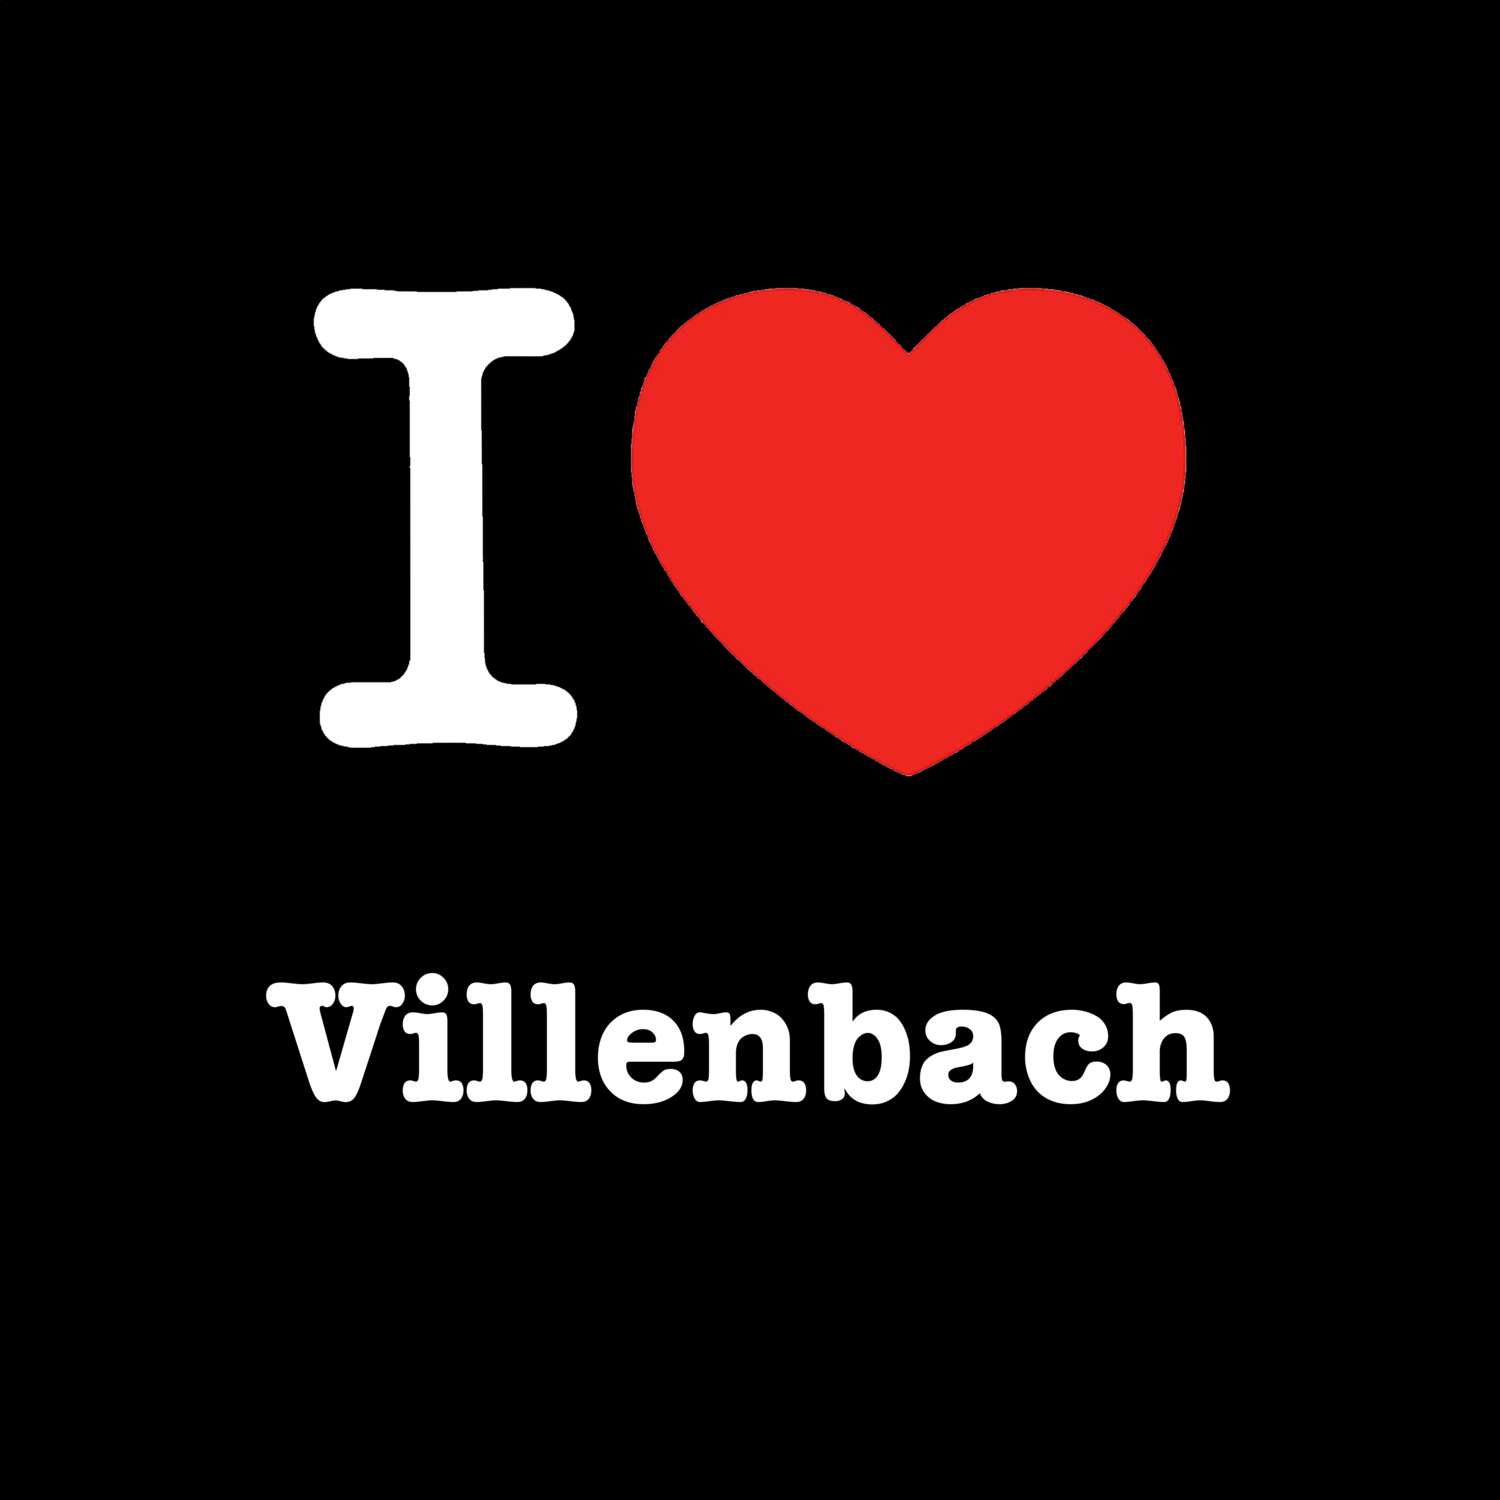 Villenbach T-Shirt »I love«